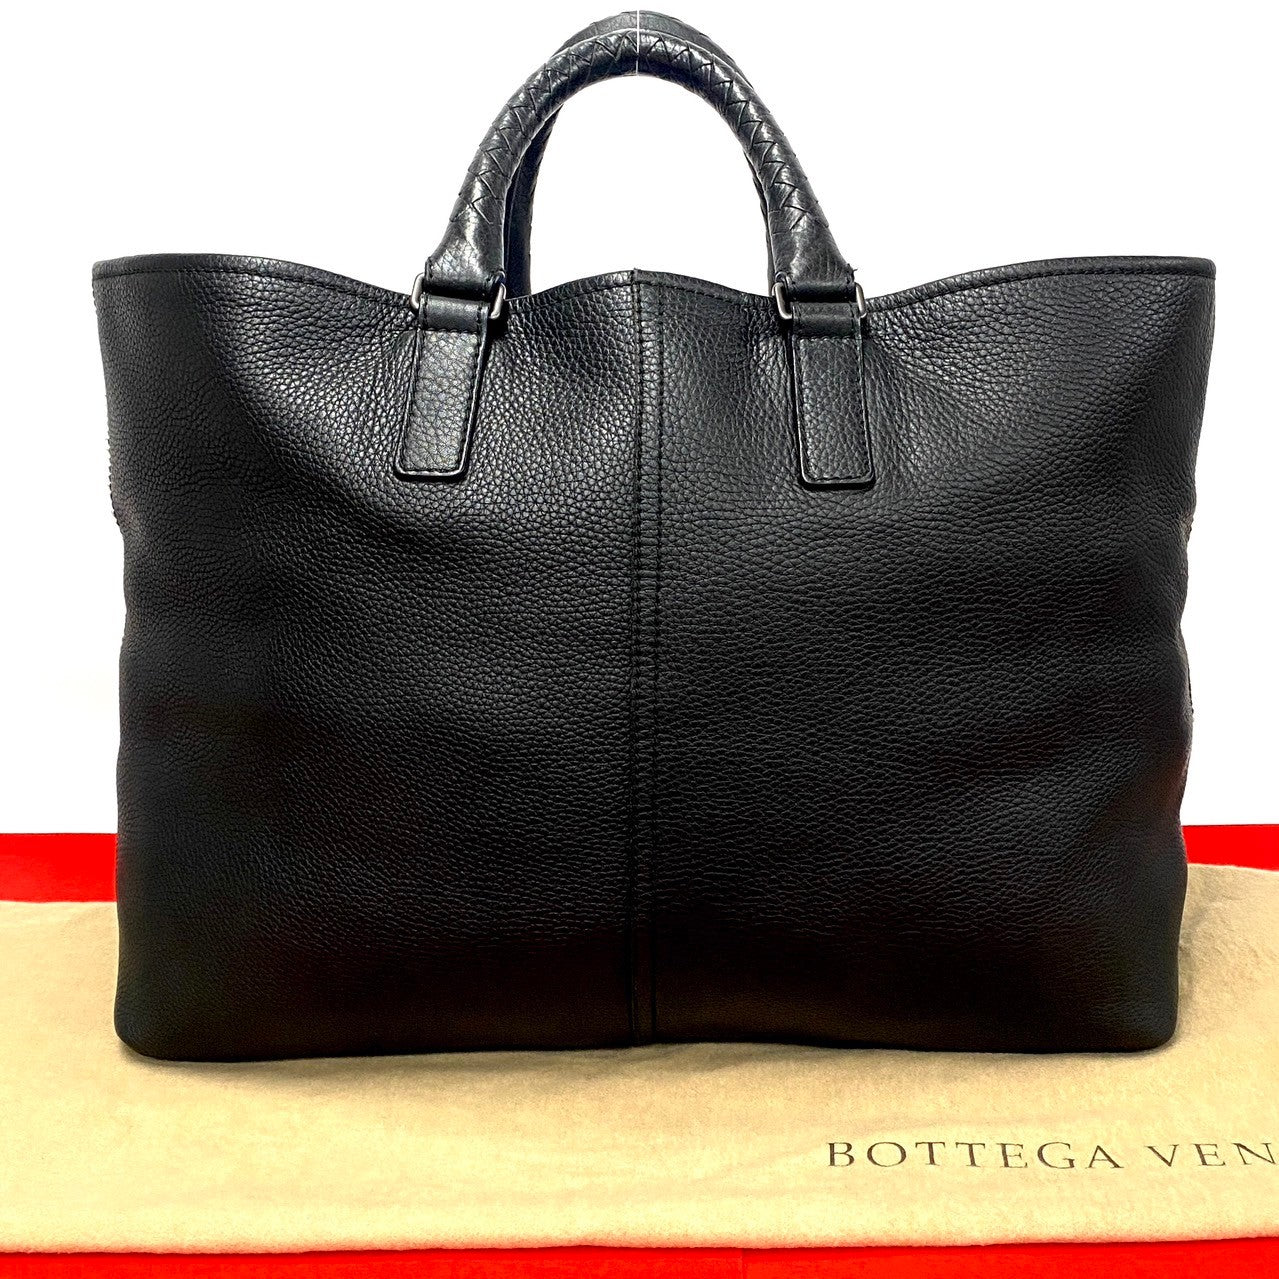 Bottega Veneta Intrecciato Marco Polo Tote Bag Leather Tote Bag 无法识别 in Excellent condition